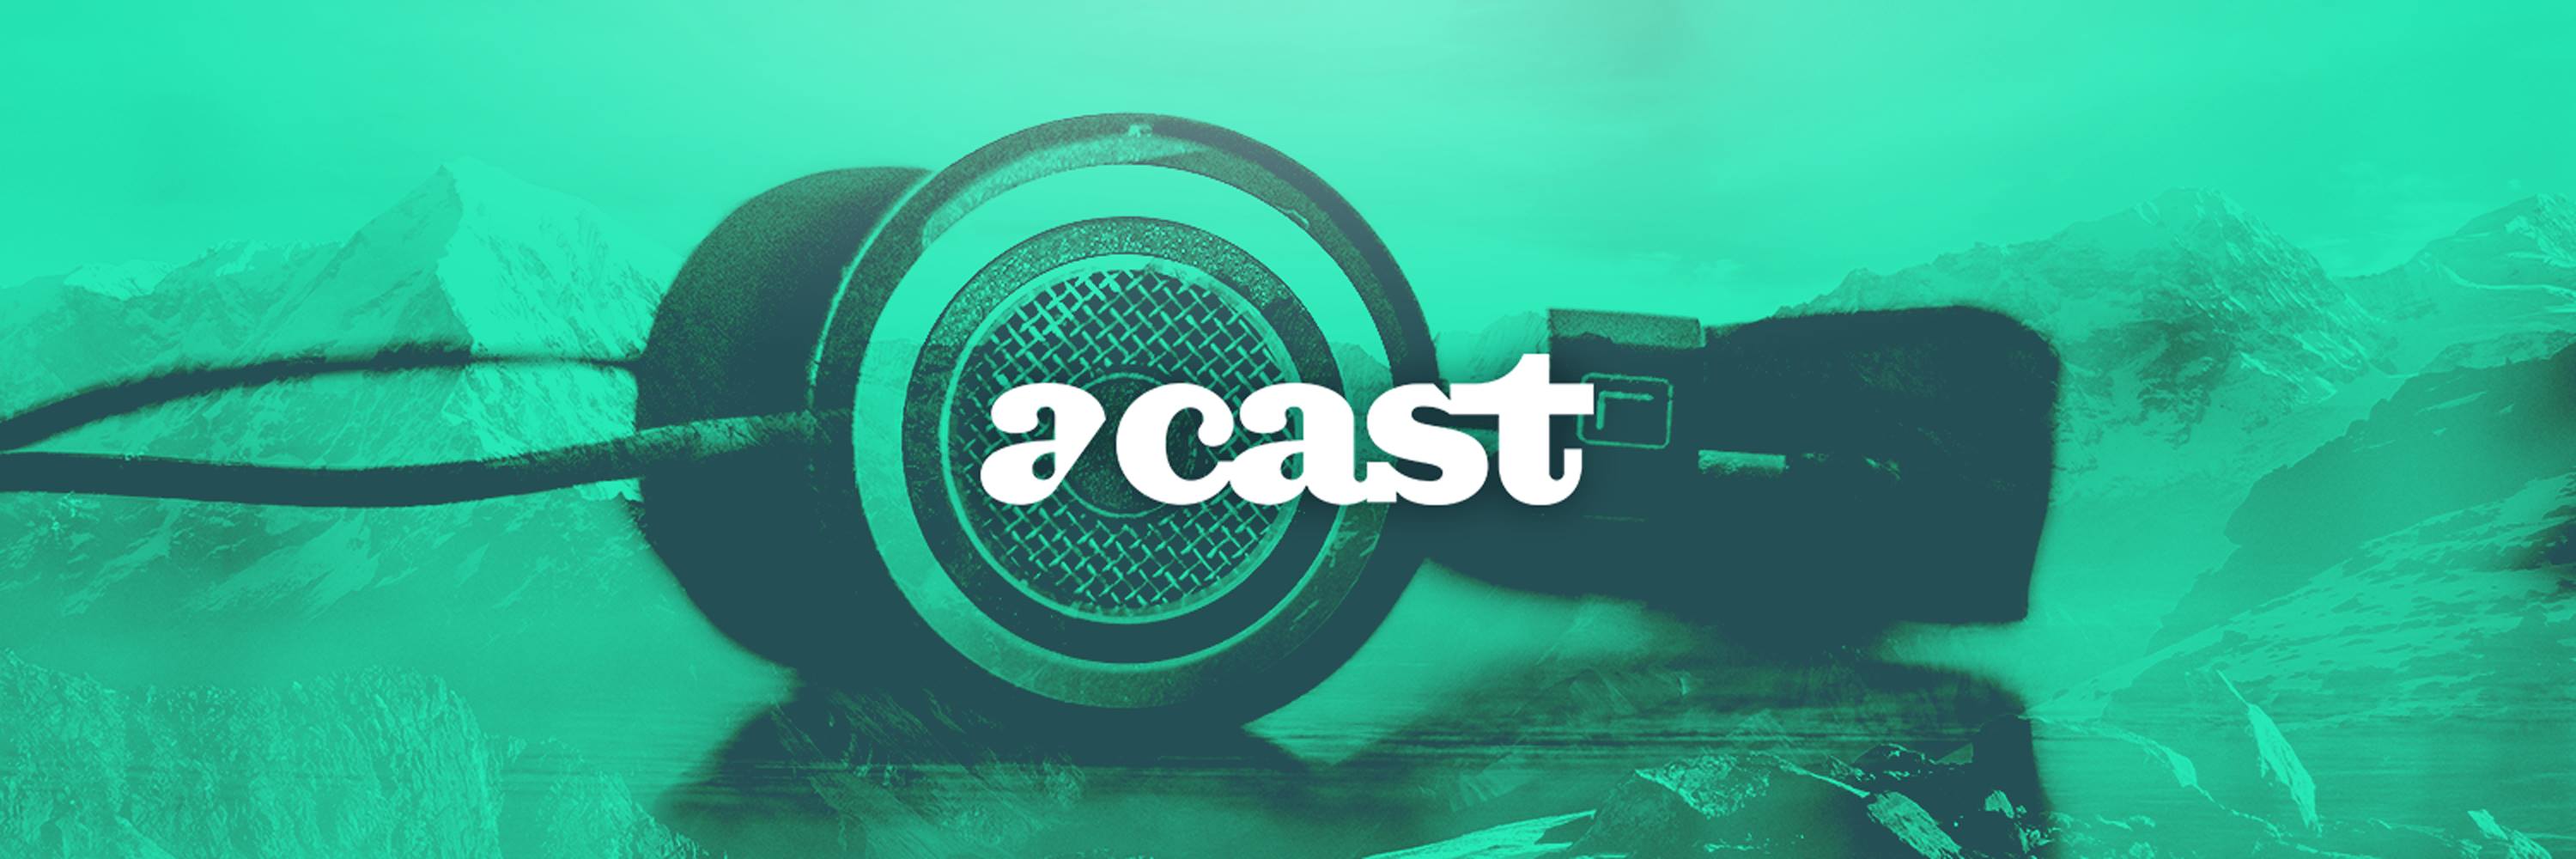 Acast double ses revenus et passe la barre des 20 M$